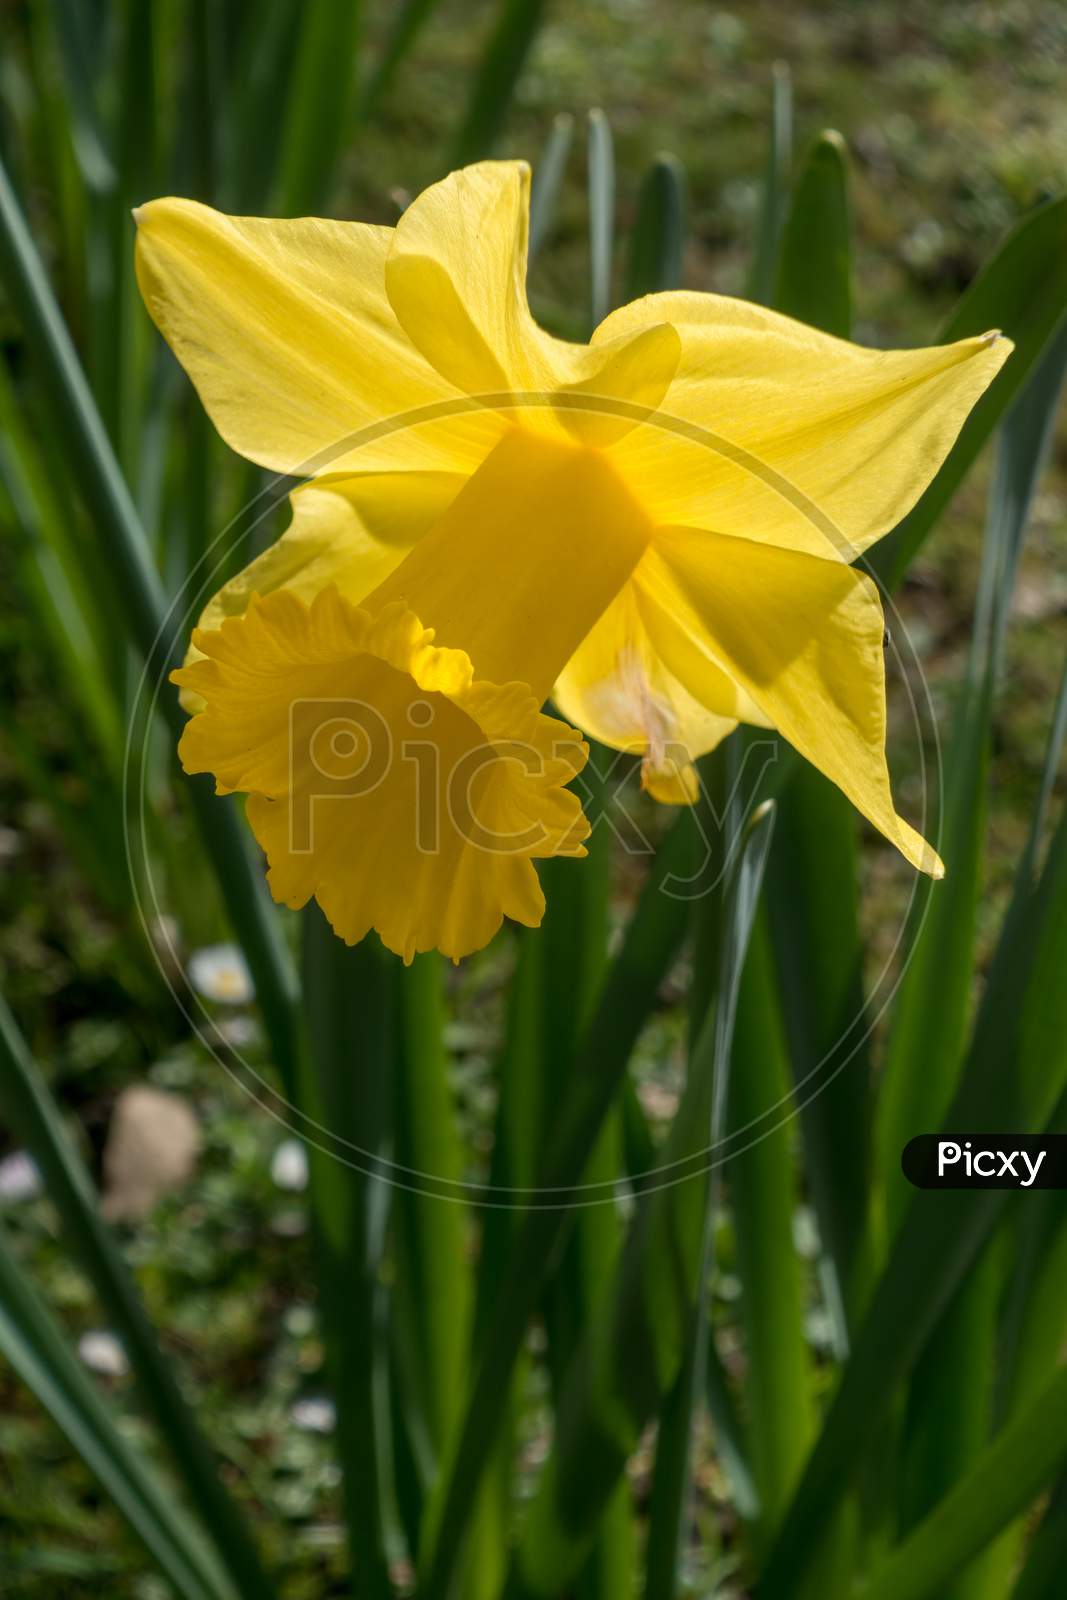 Golden Daffodil Flowering In The Spring Sunshine